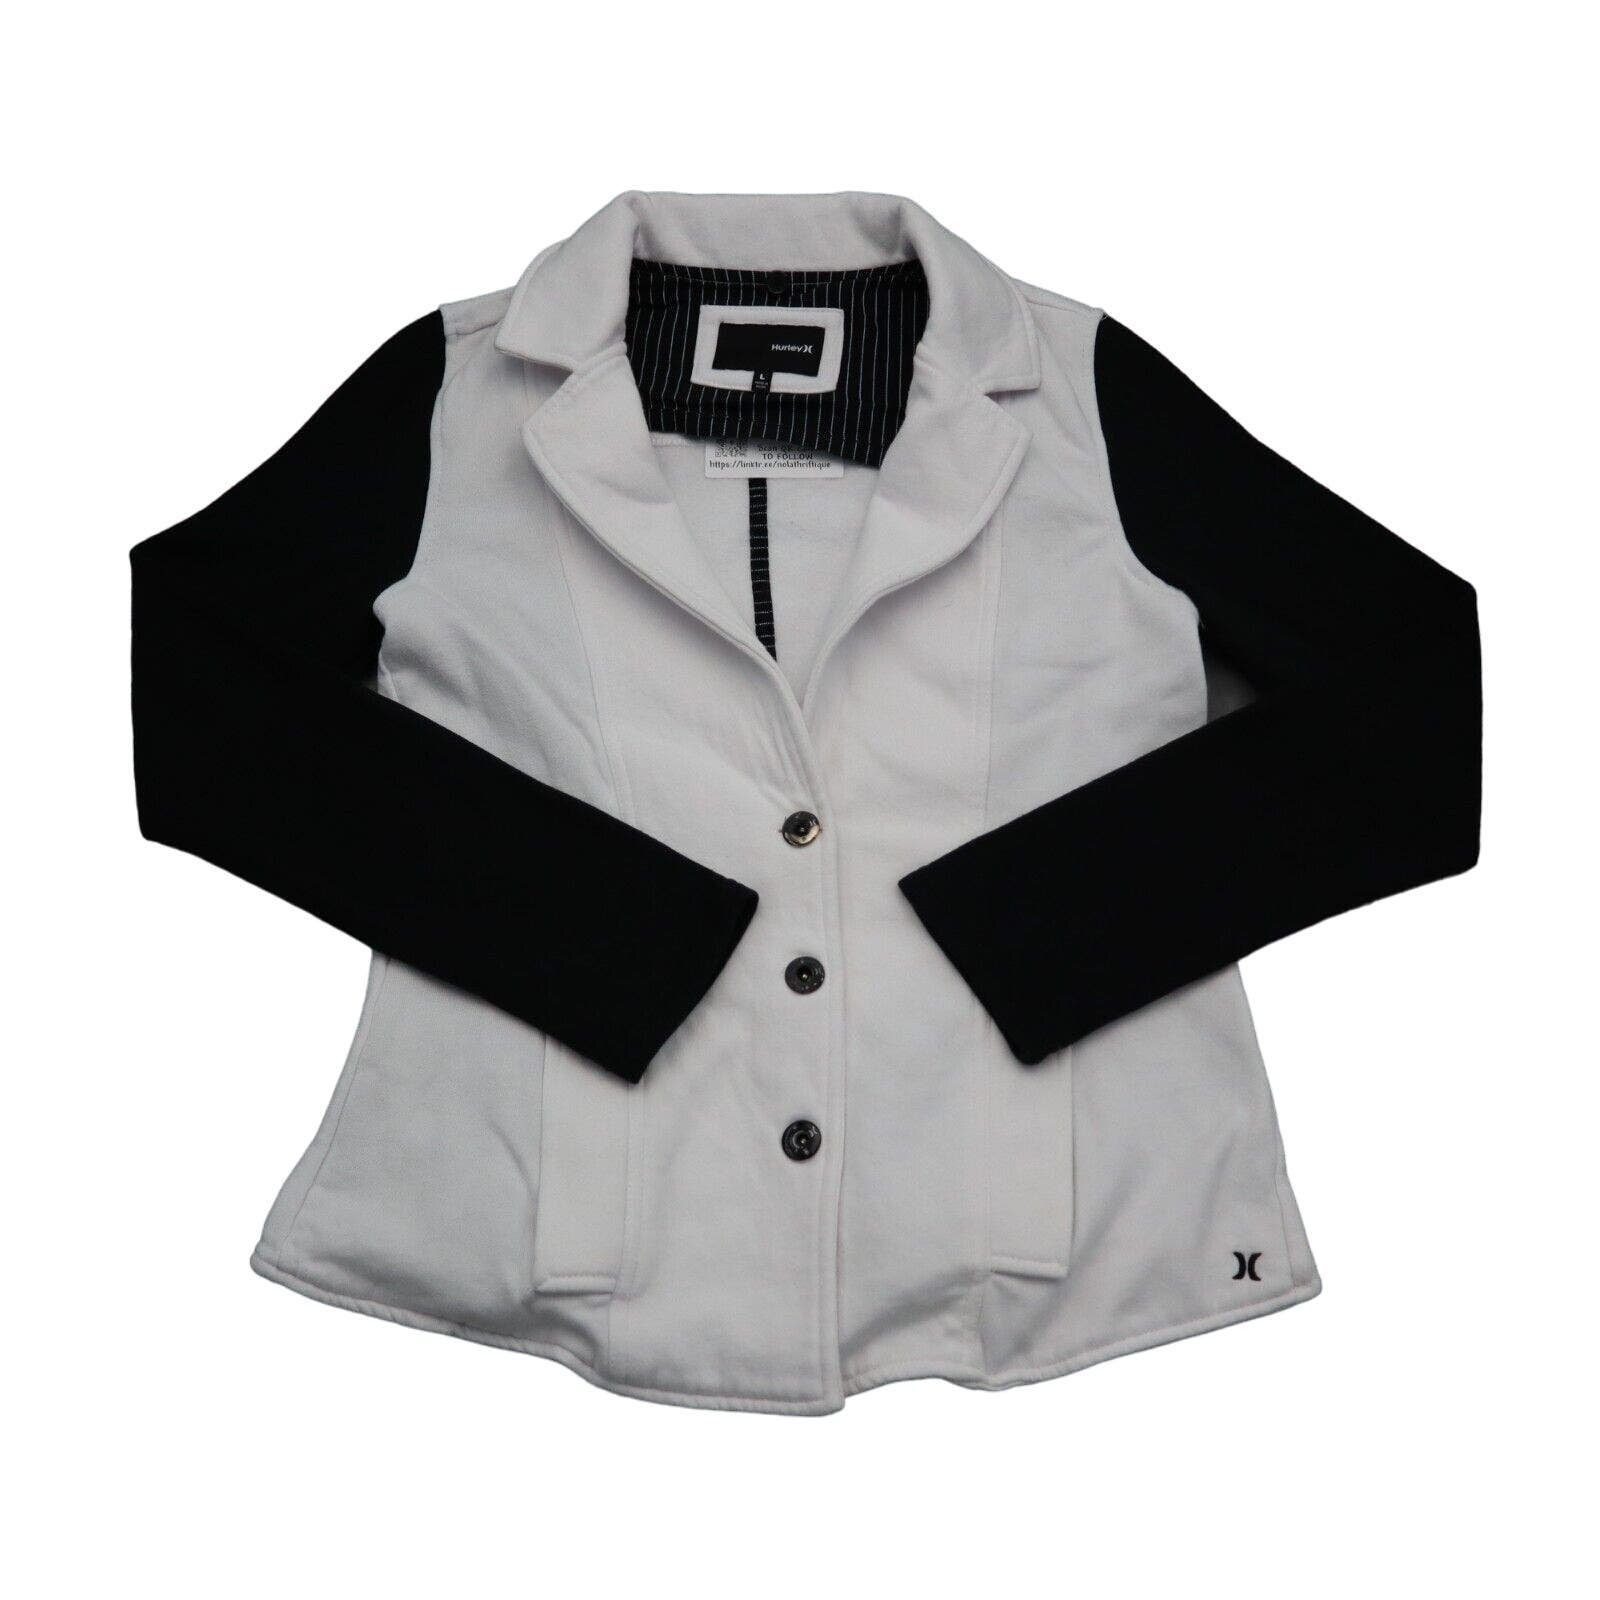 Popular Hurley Jacket Womens L White Black Blazer Notch